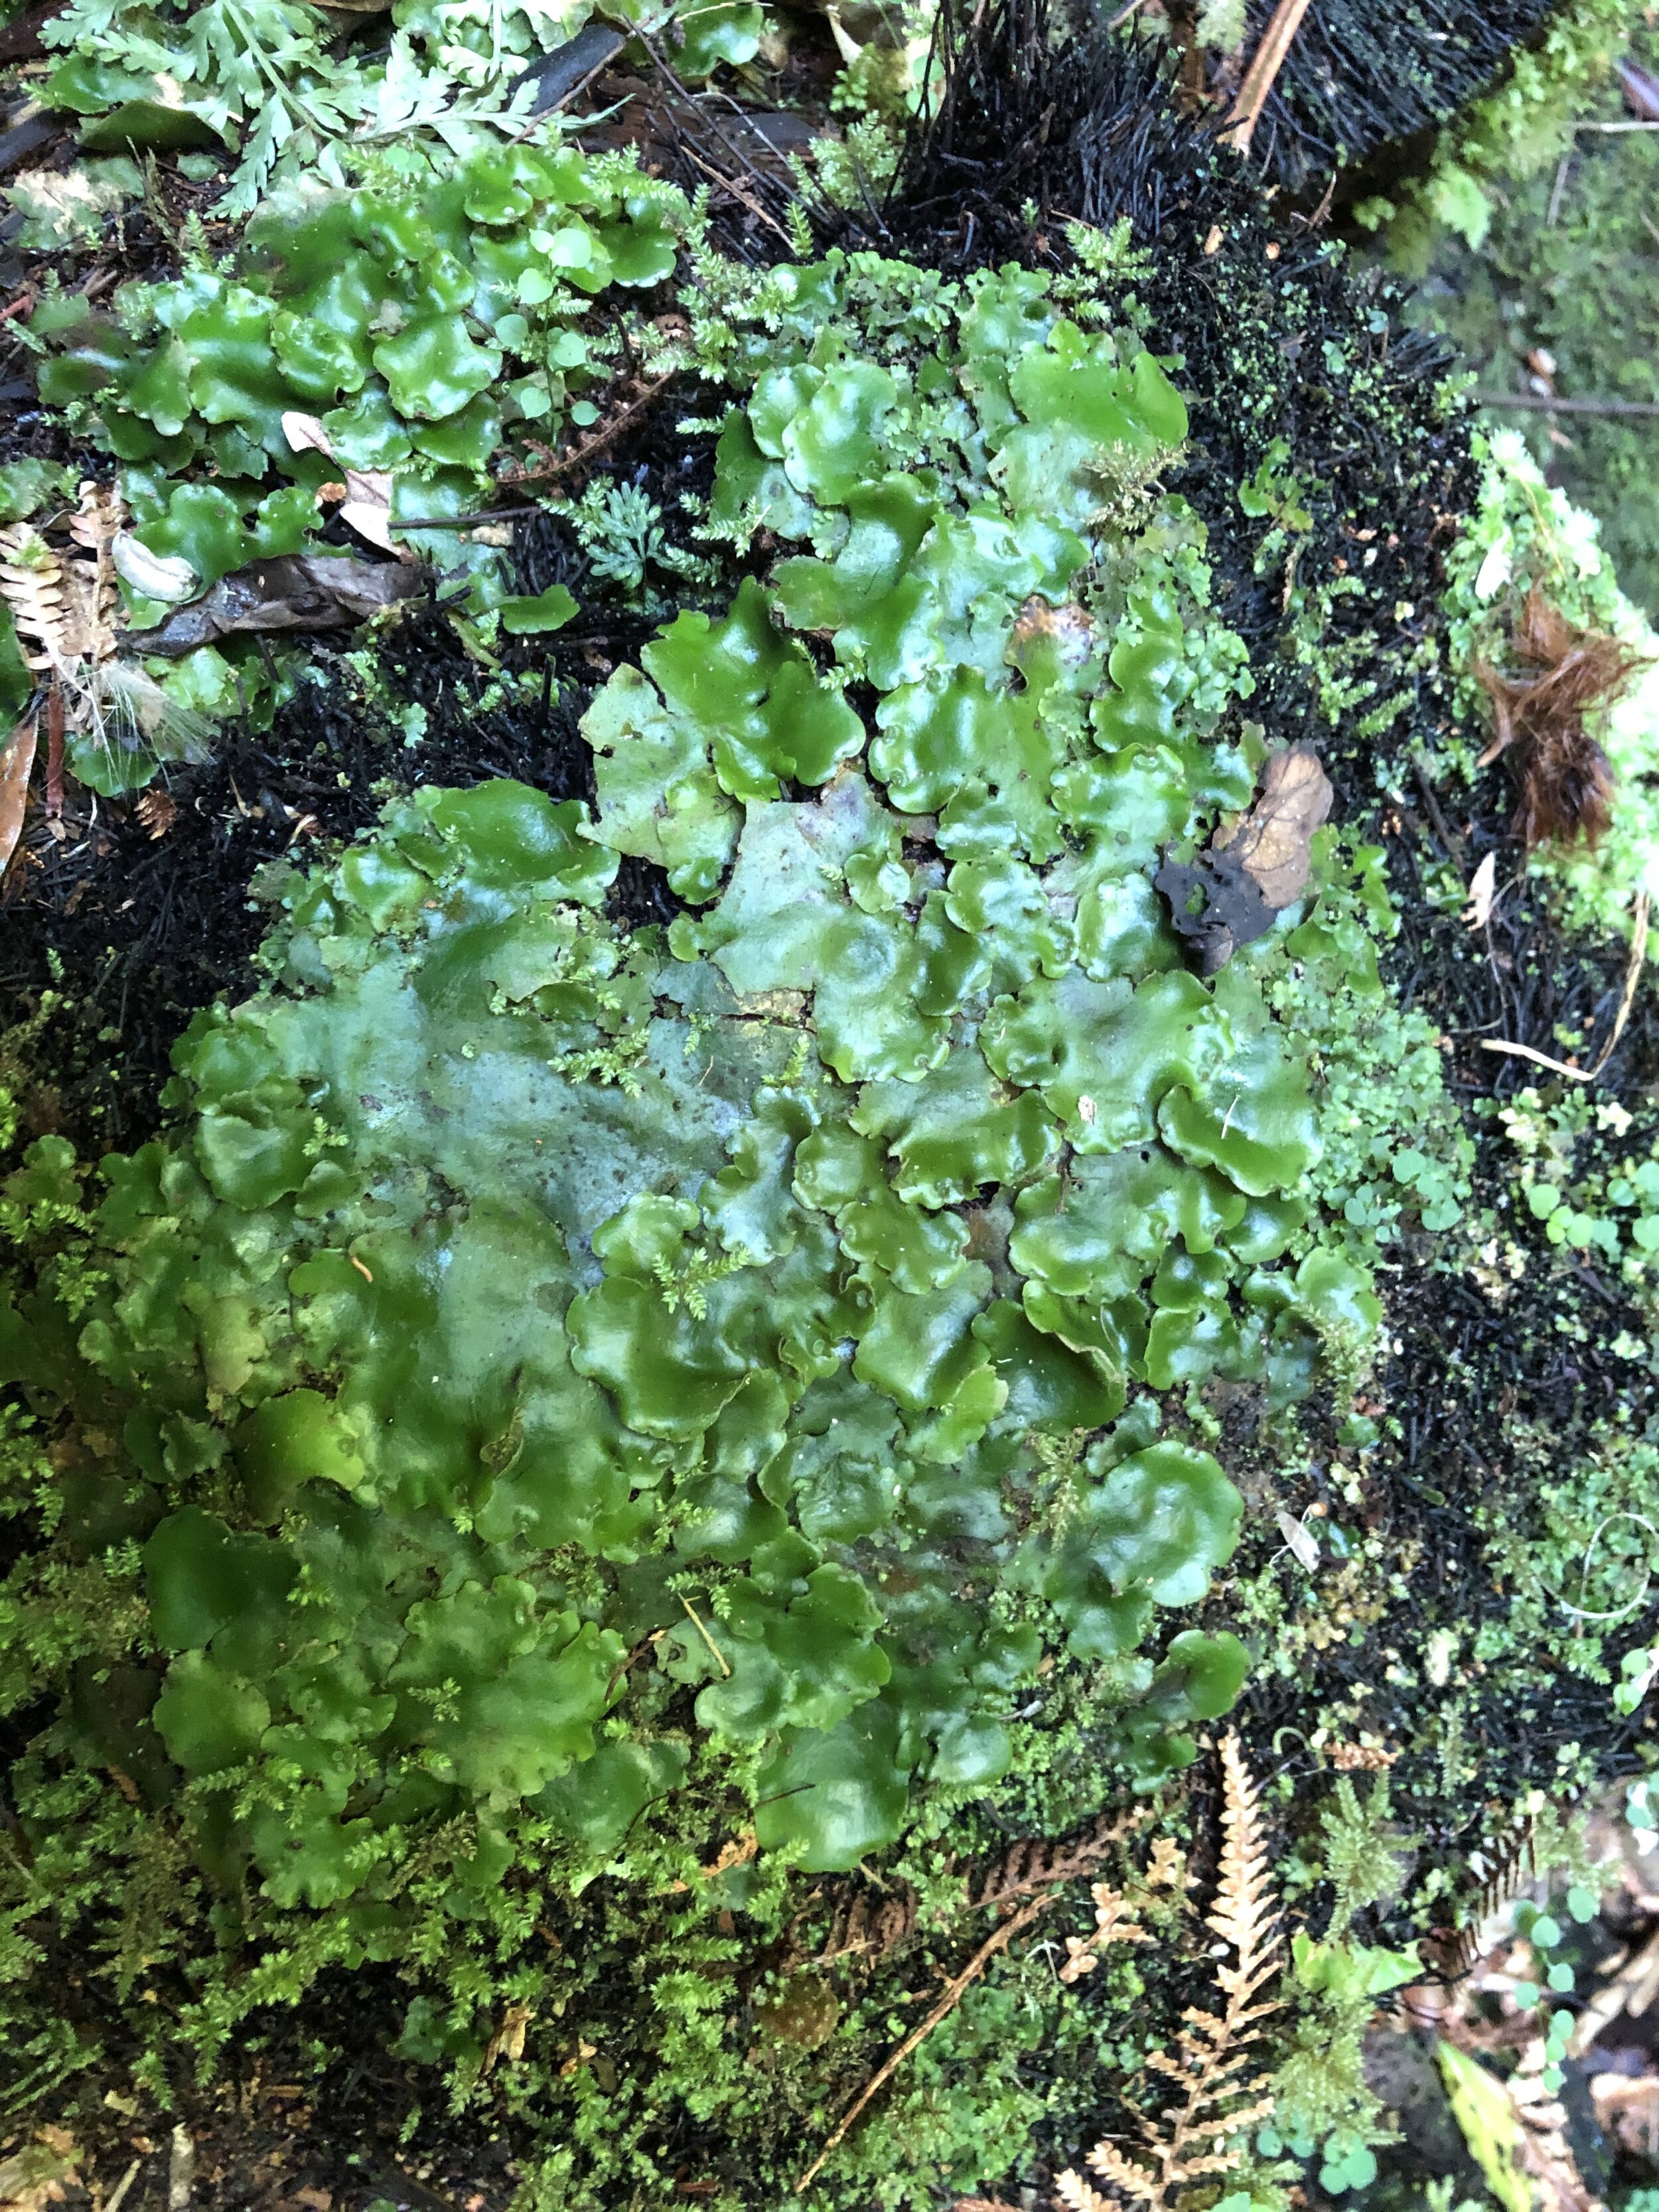  Thaloid, or liverwort, moss.  